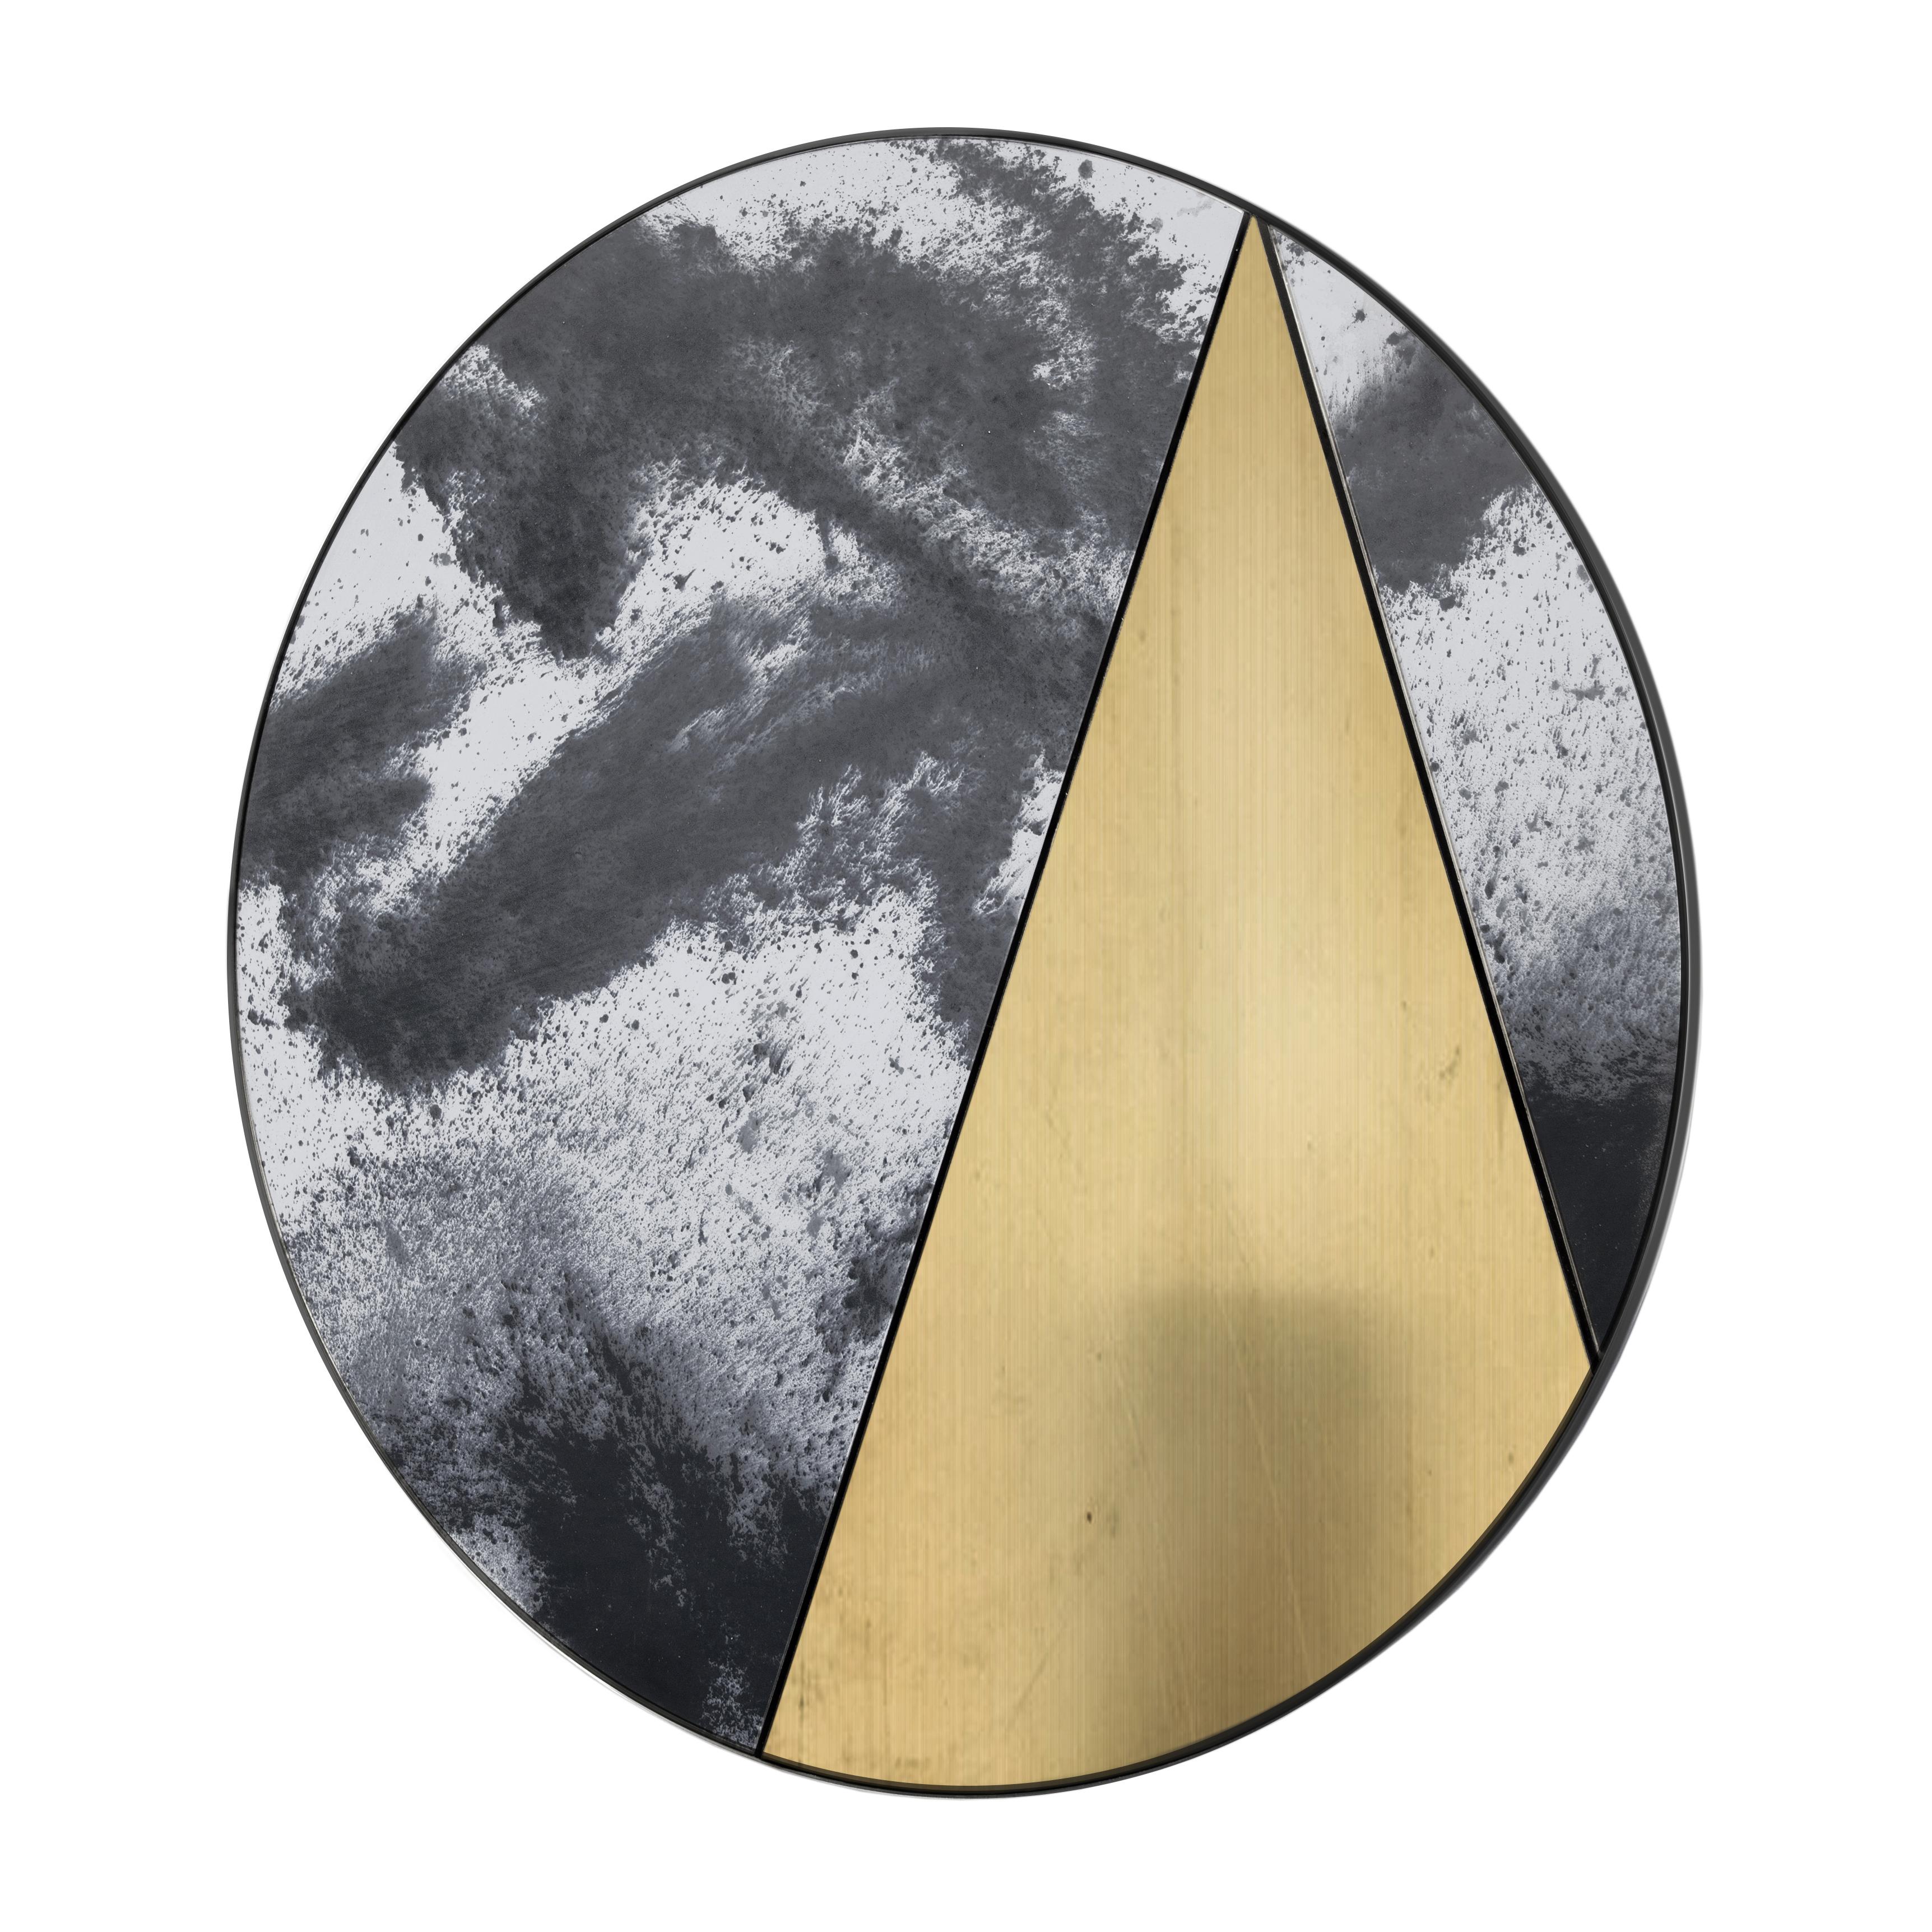 Itinera Res Lunare II

En combinant les superbes miroirs anciens avec la chaleur des matériaux naturels finis à la main, les miroirs Res seront une présence élégante dans chaque environnement. La netteté harmonieuse du design, qui s'exprime avec